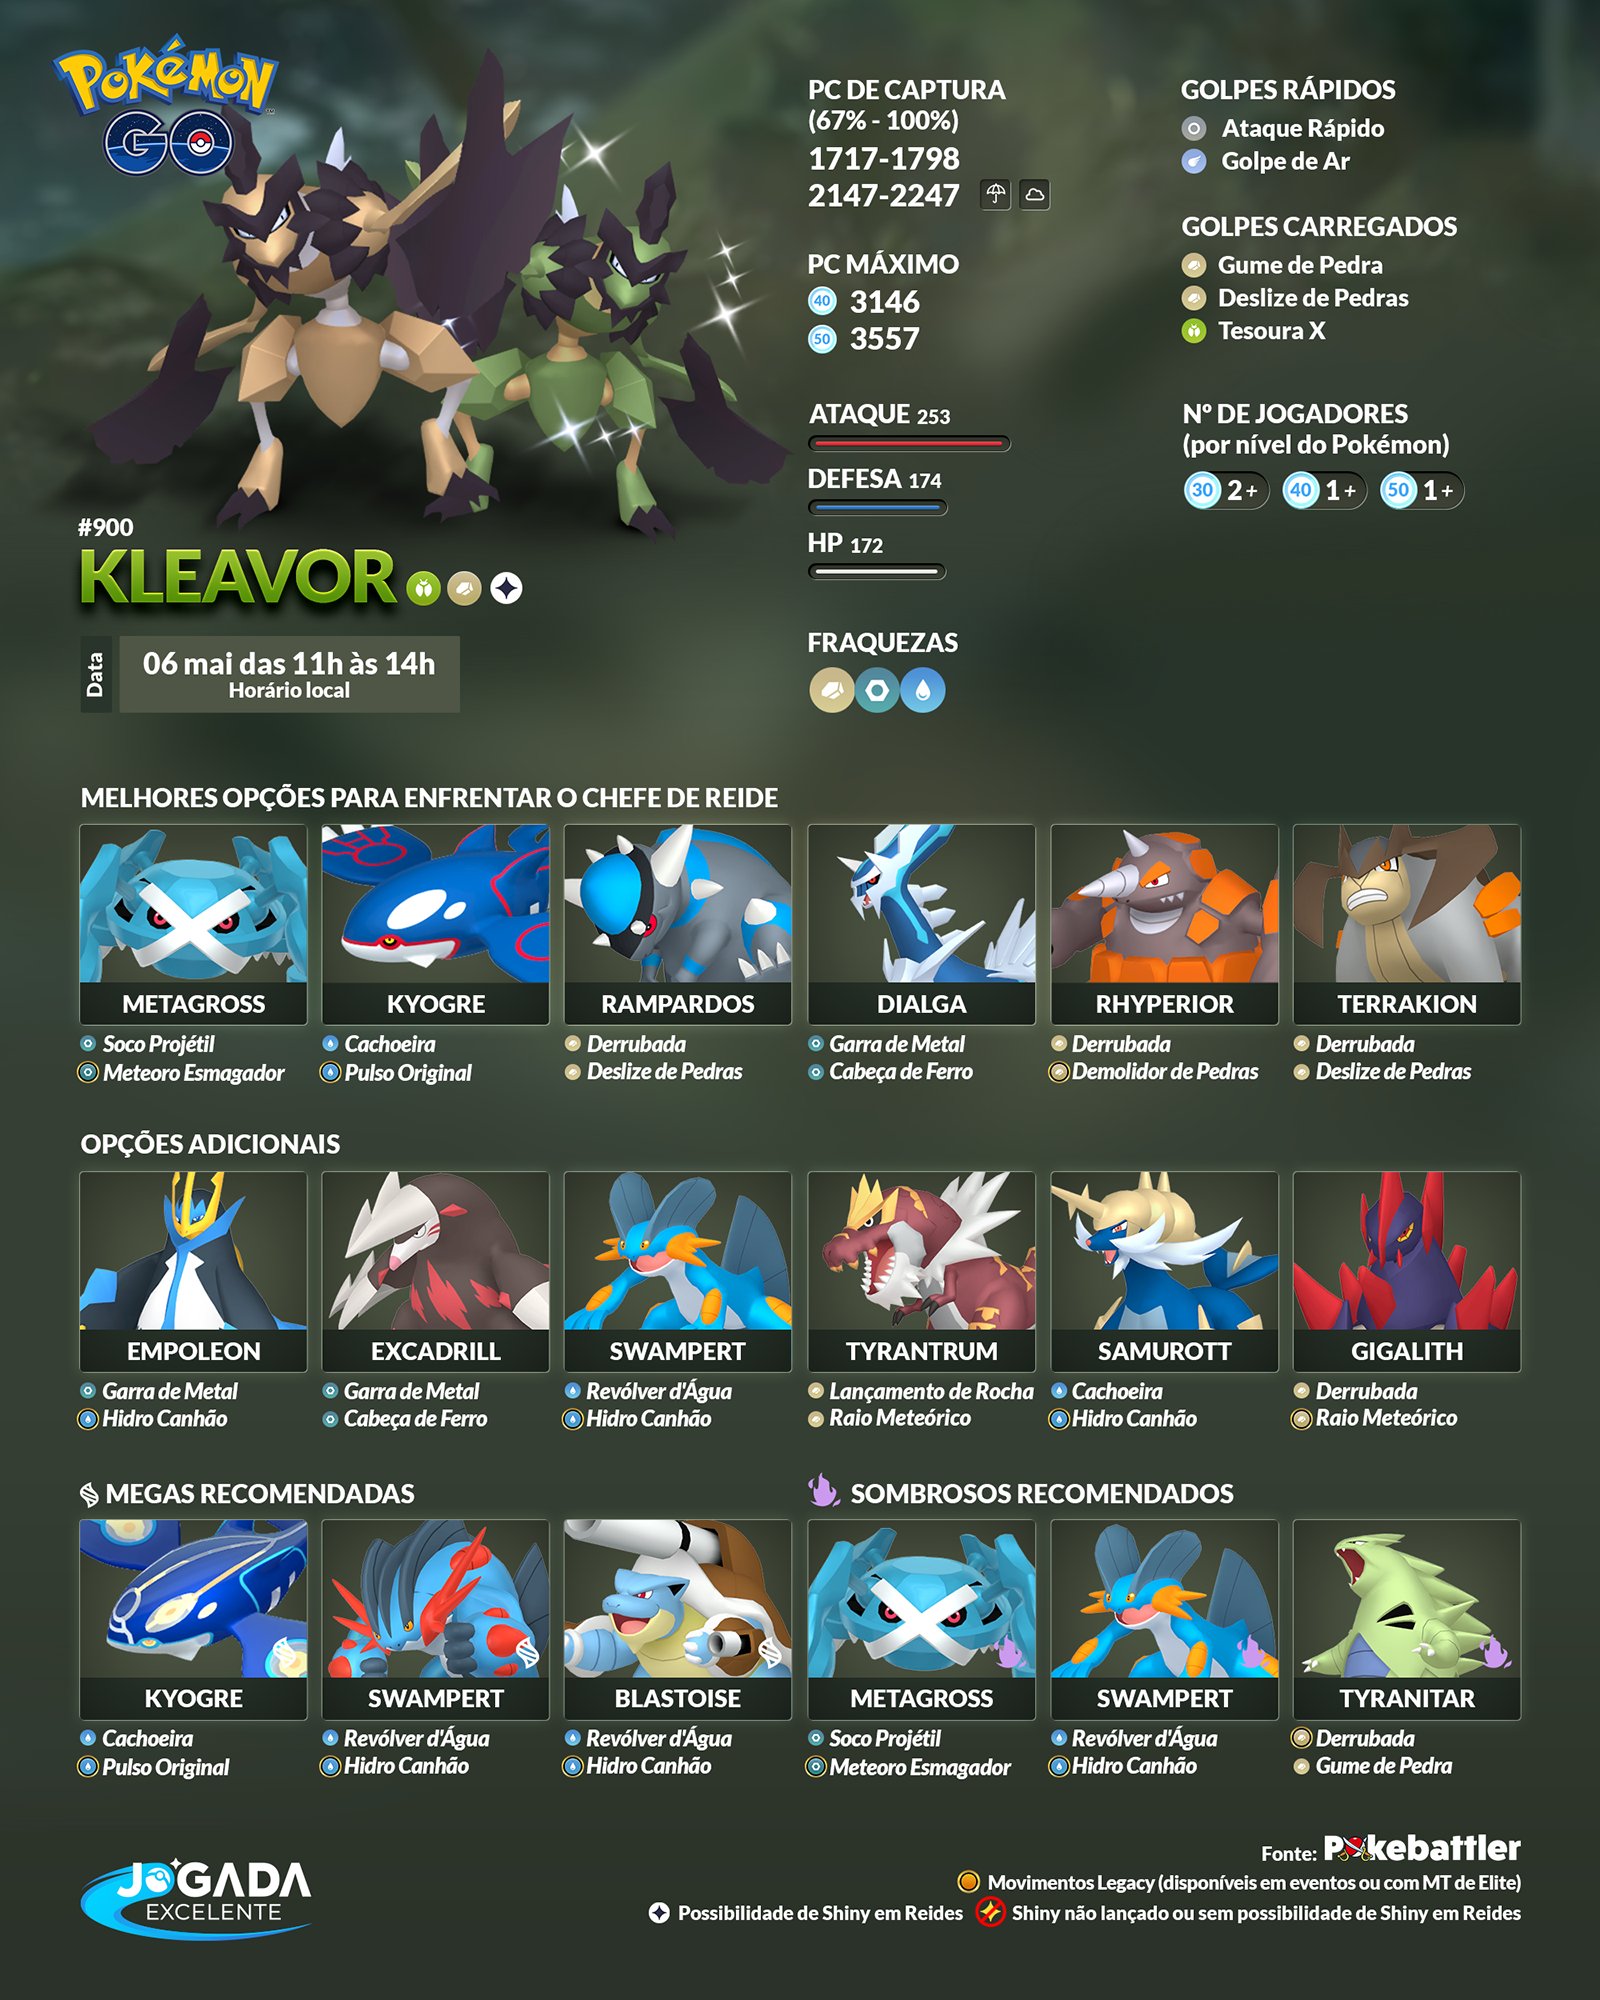 Jogada Excelente - Rayquaza retornará ao Pokémon GO como Chefe de